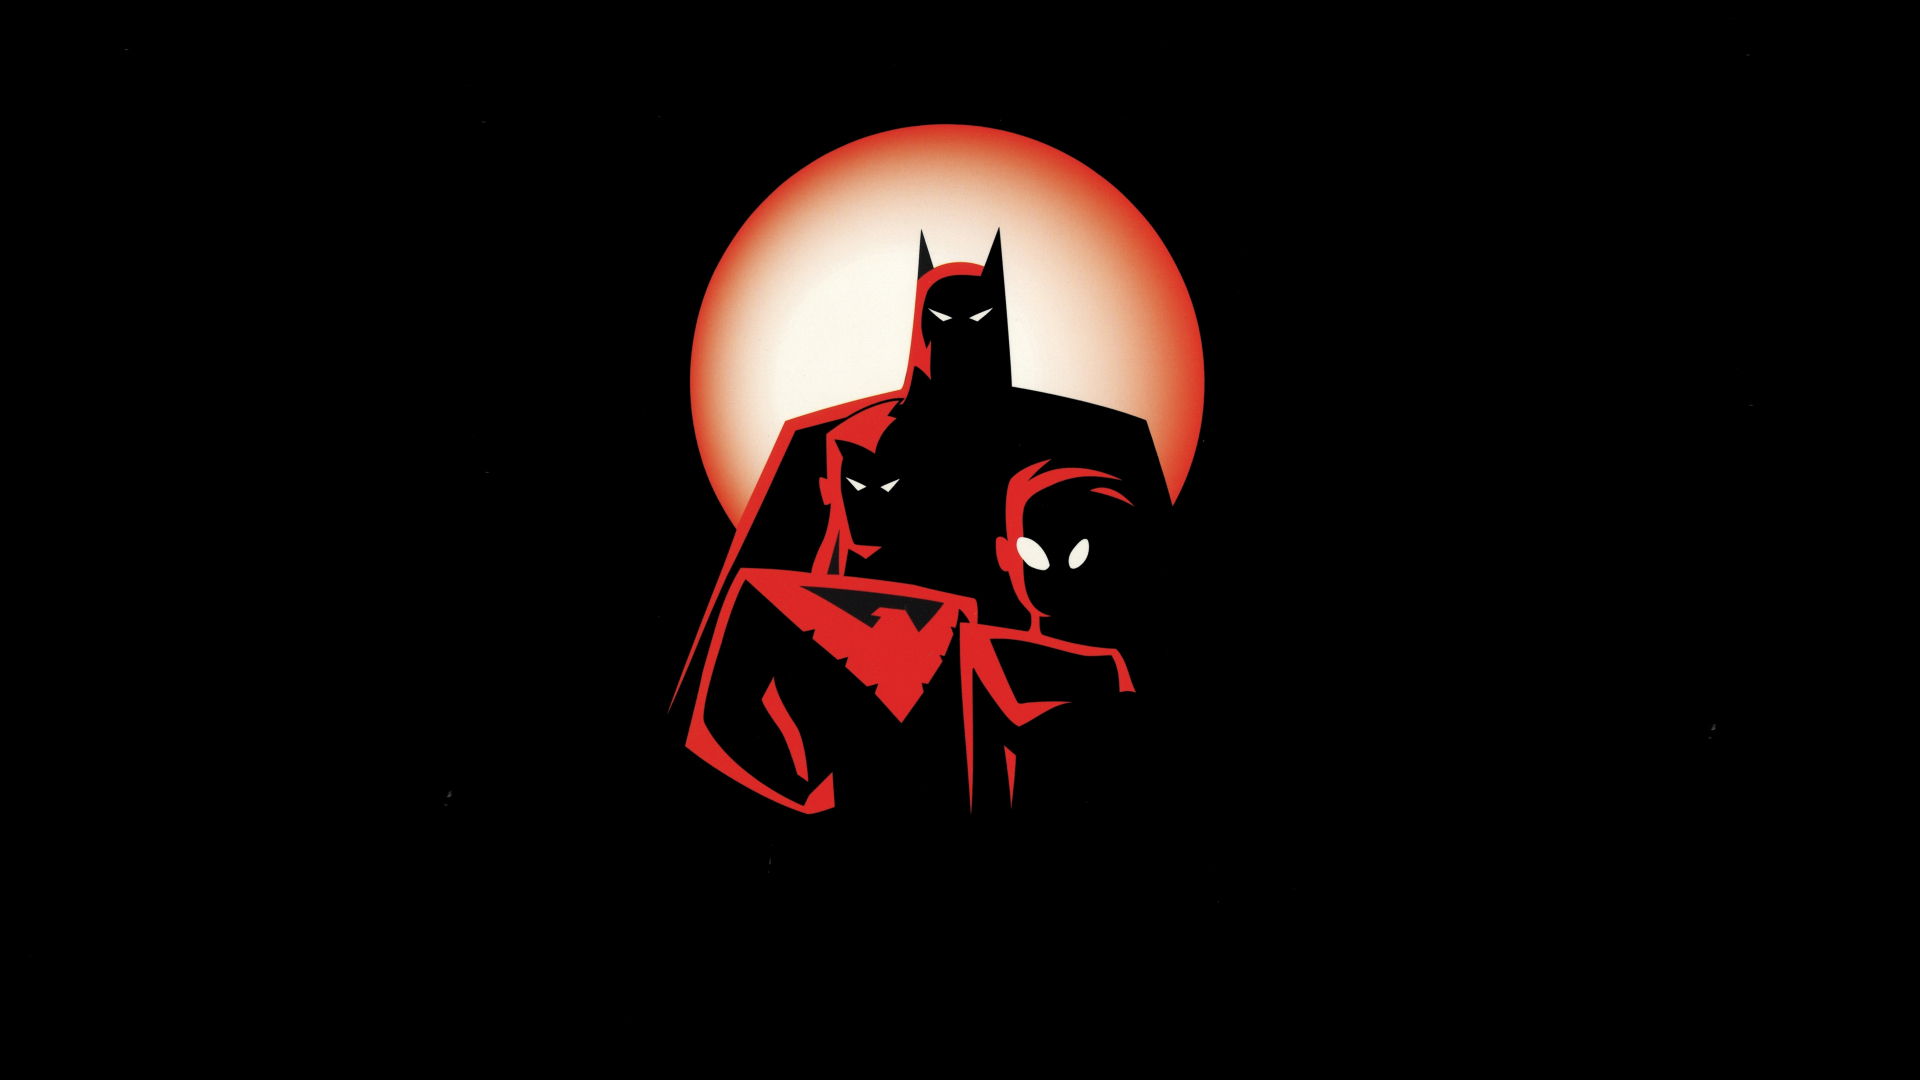 download the new batman adventures